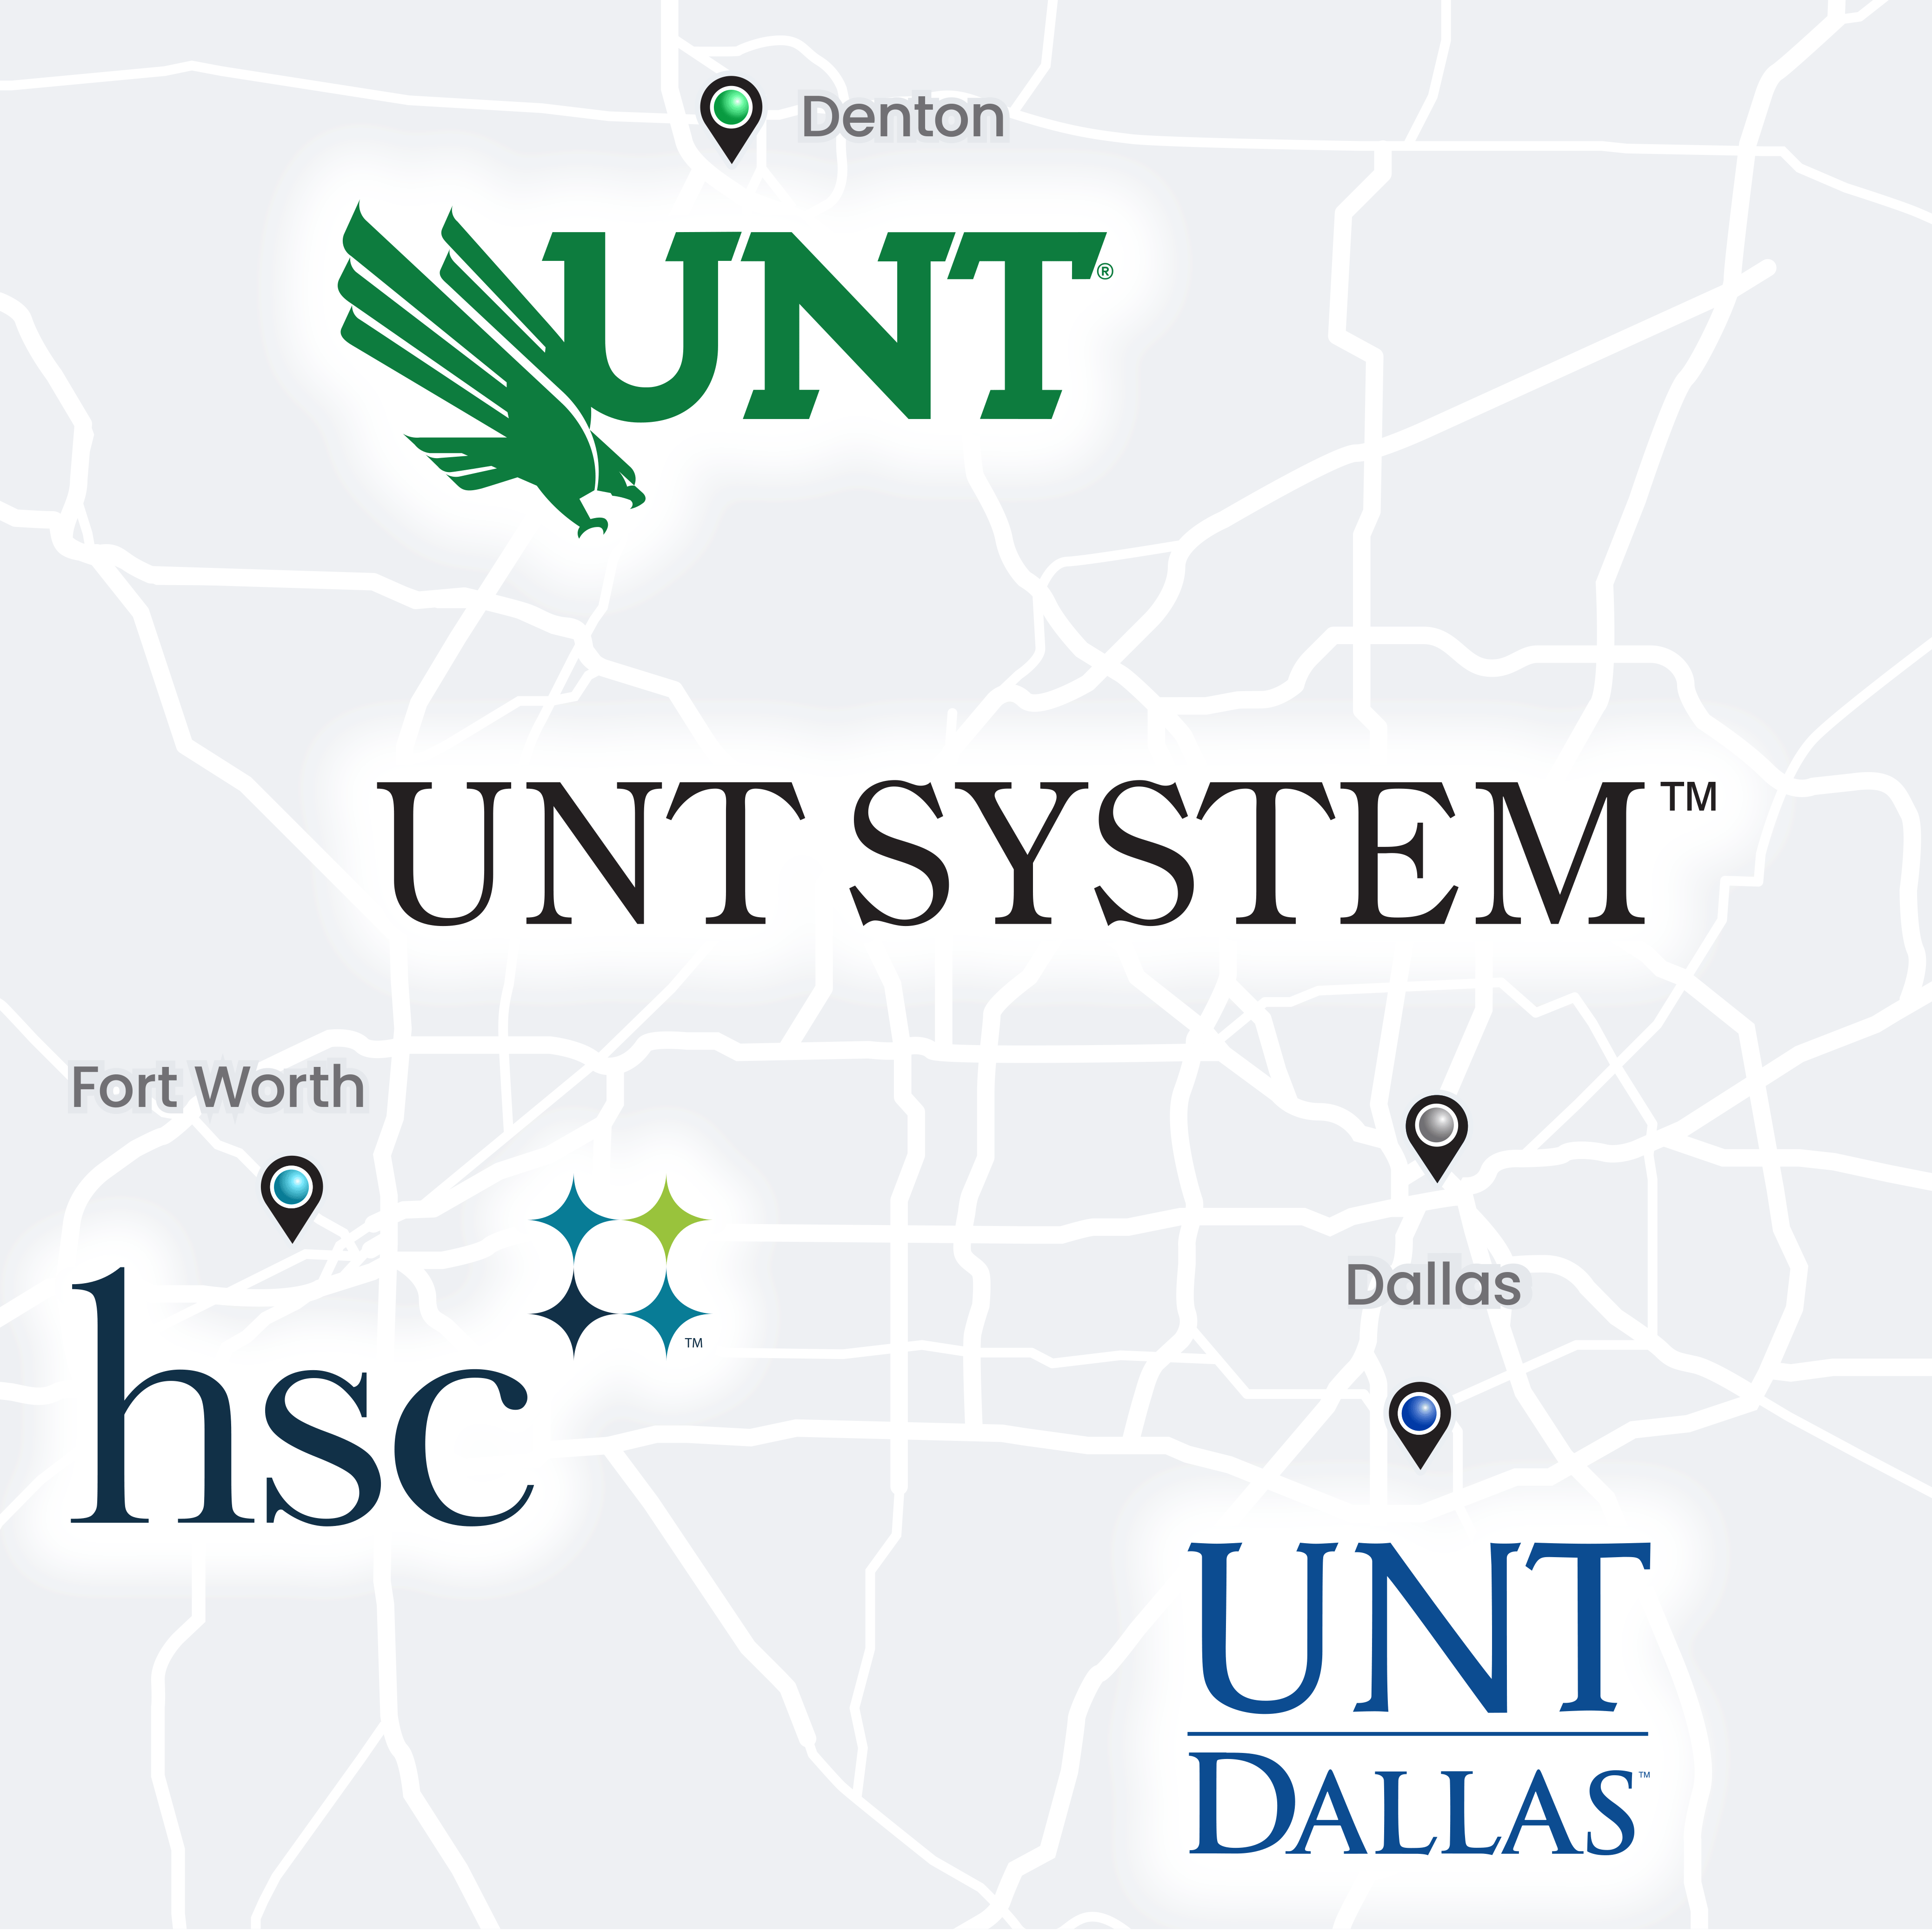 DFW Map of UNT System Campus Locations